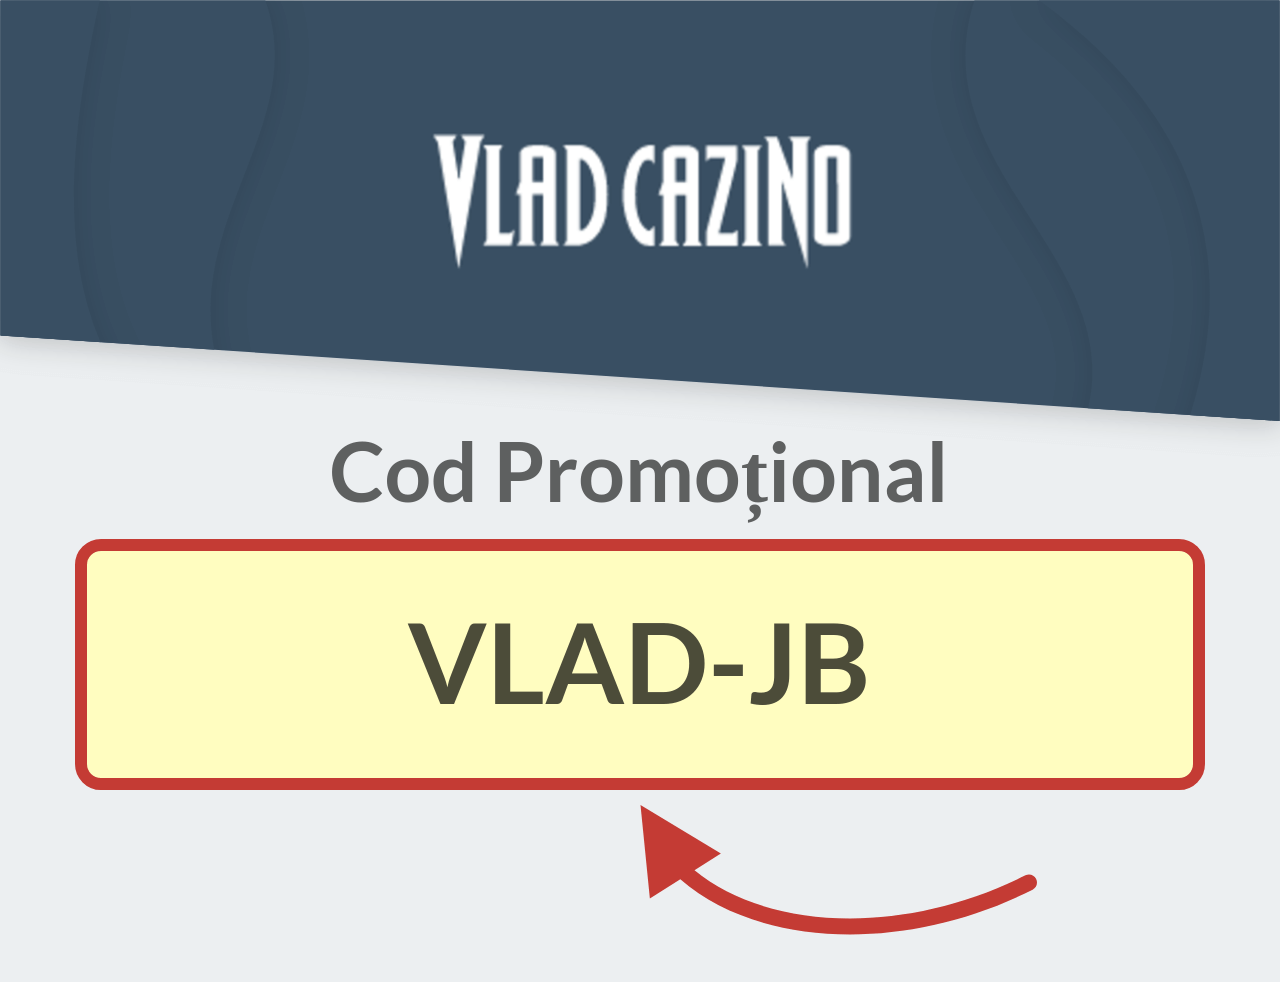 Cod promoțional Vlad Cazino